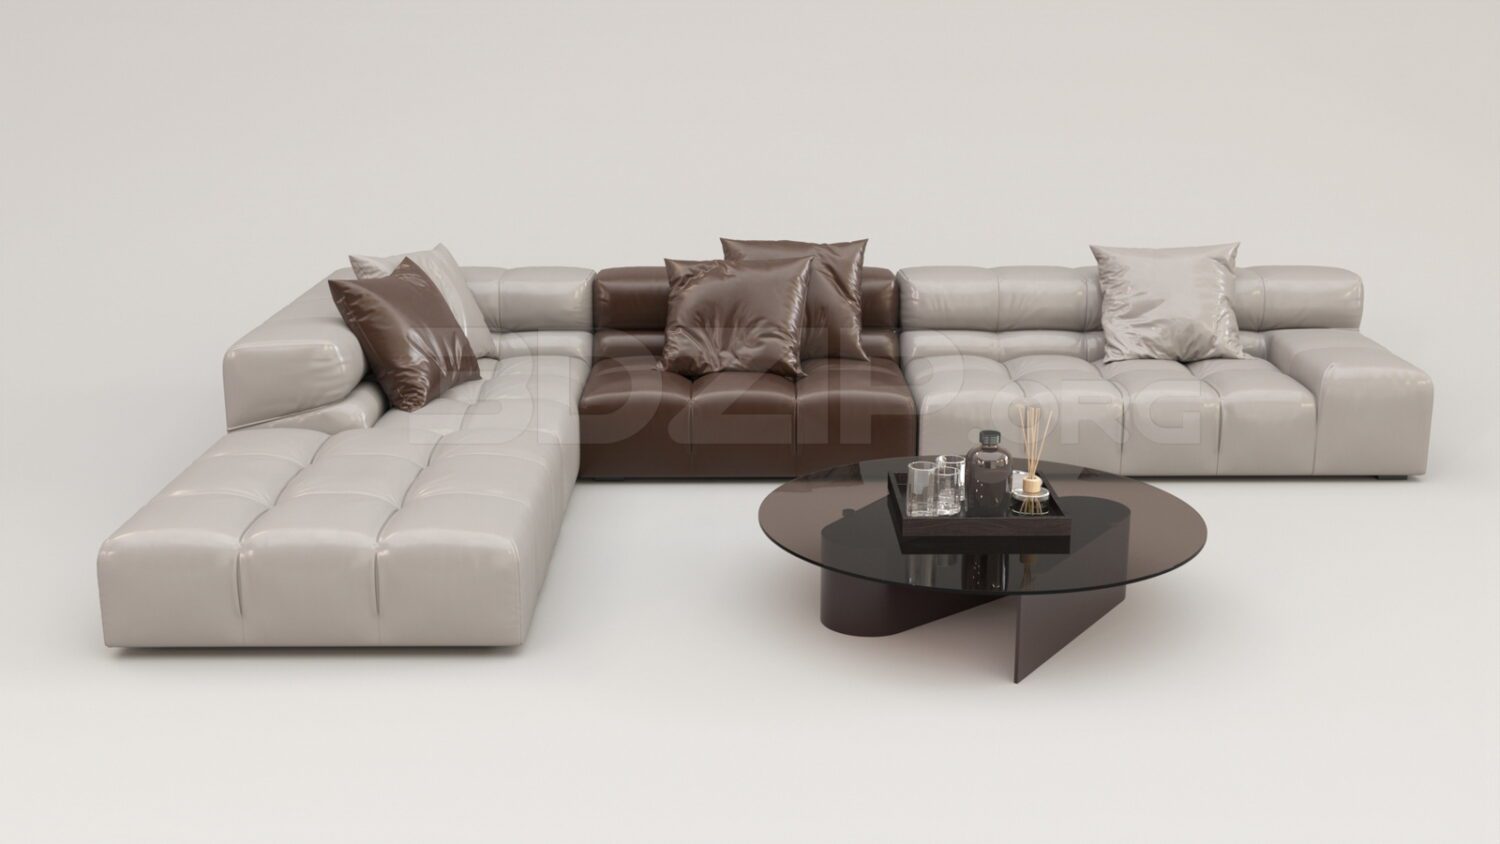 4558. Free 3D Sofa Model Download